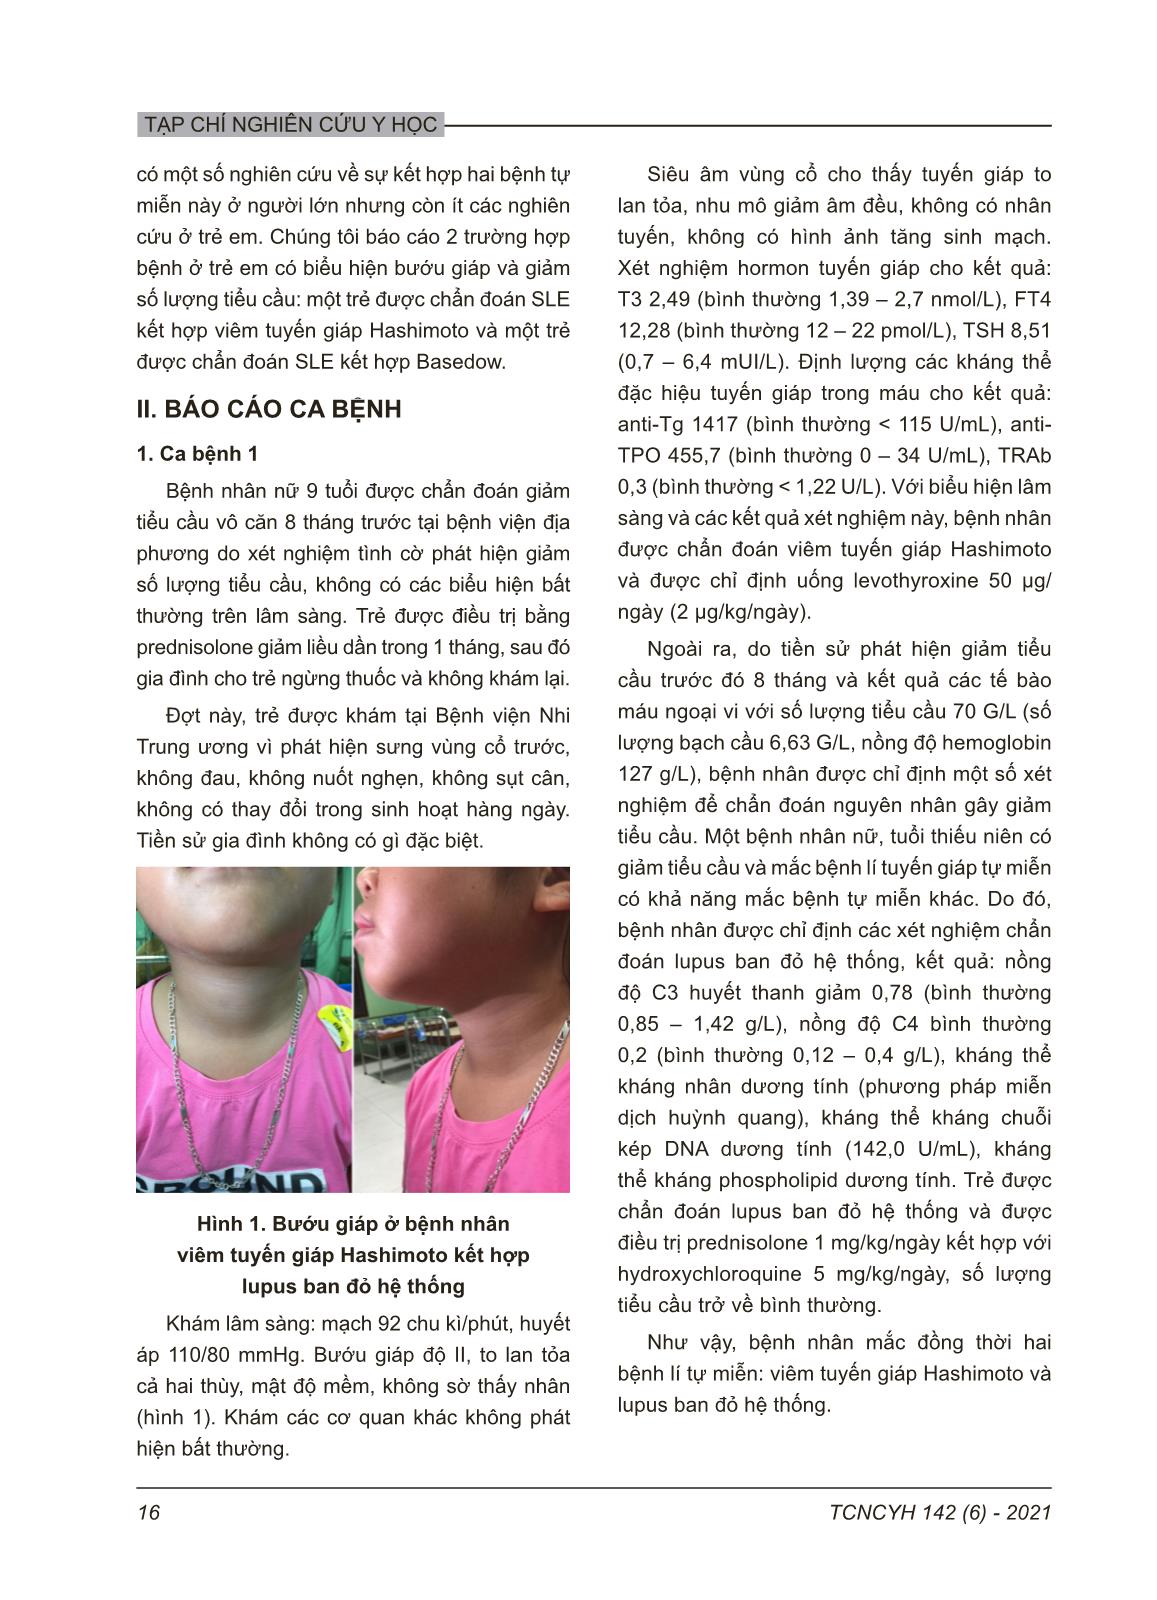 Bệnh tuyến giáp tự miễn kết hợp với lupus ban đỏ hệ thống ở trẻ em: Báo cáo 2 trường hợp trang 2